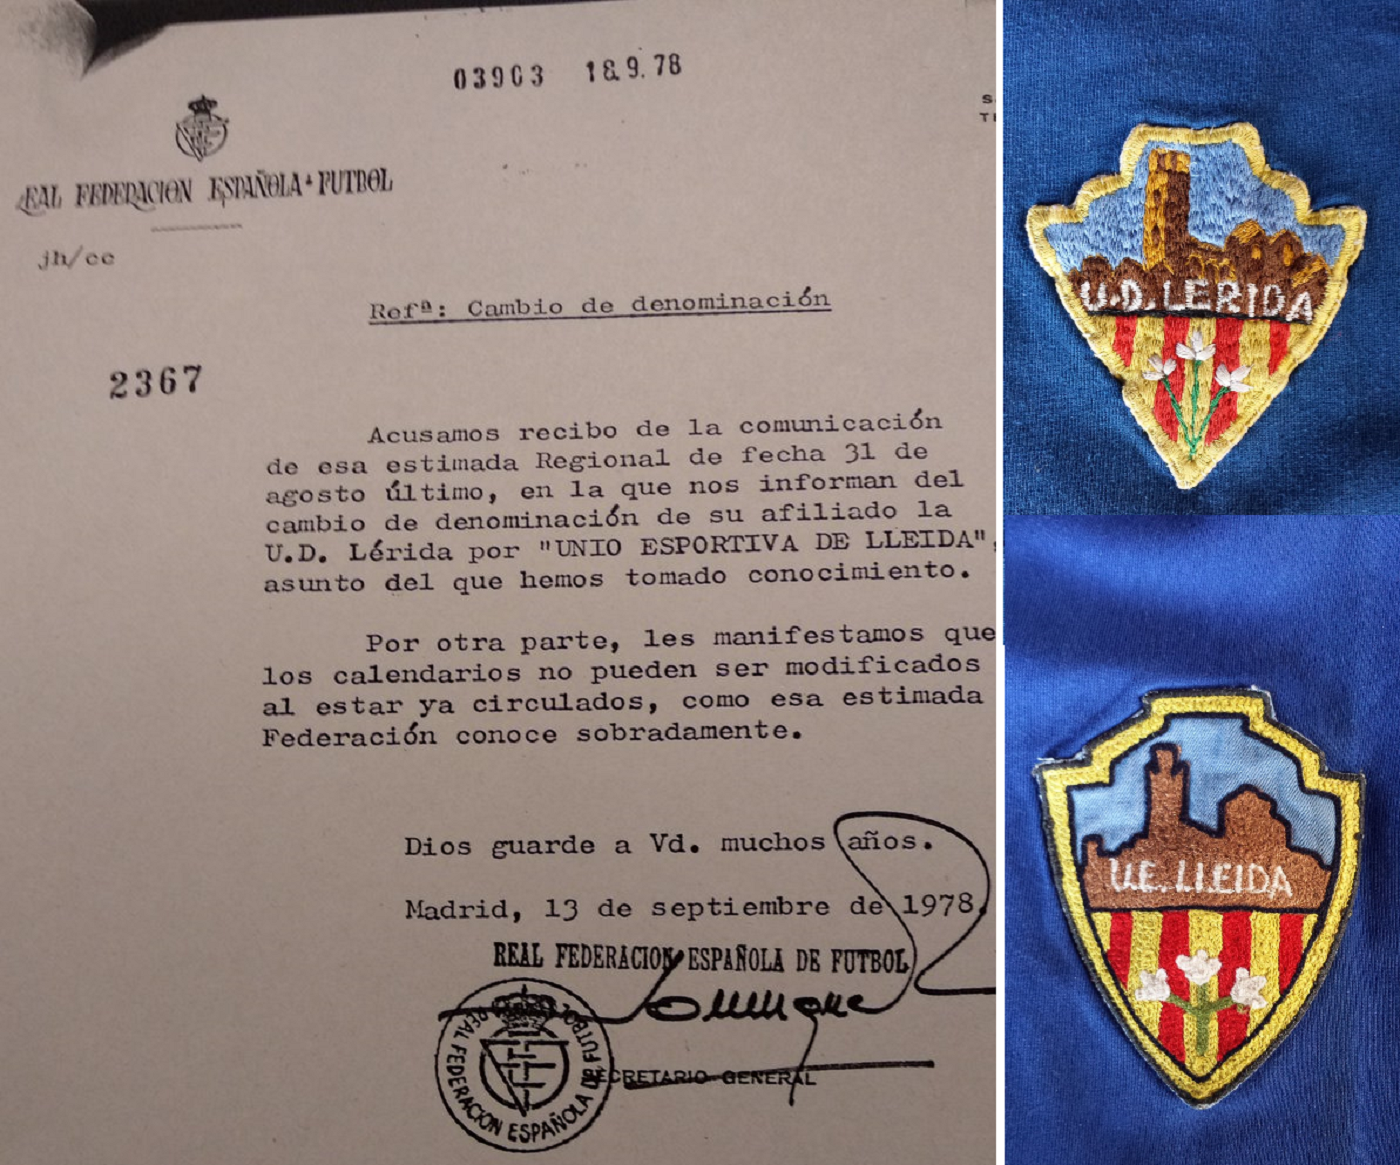 La UE Lleida, primera entitat esportiva a normalitzar el nom